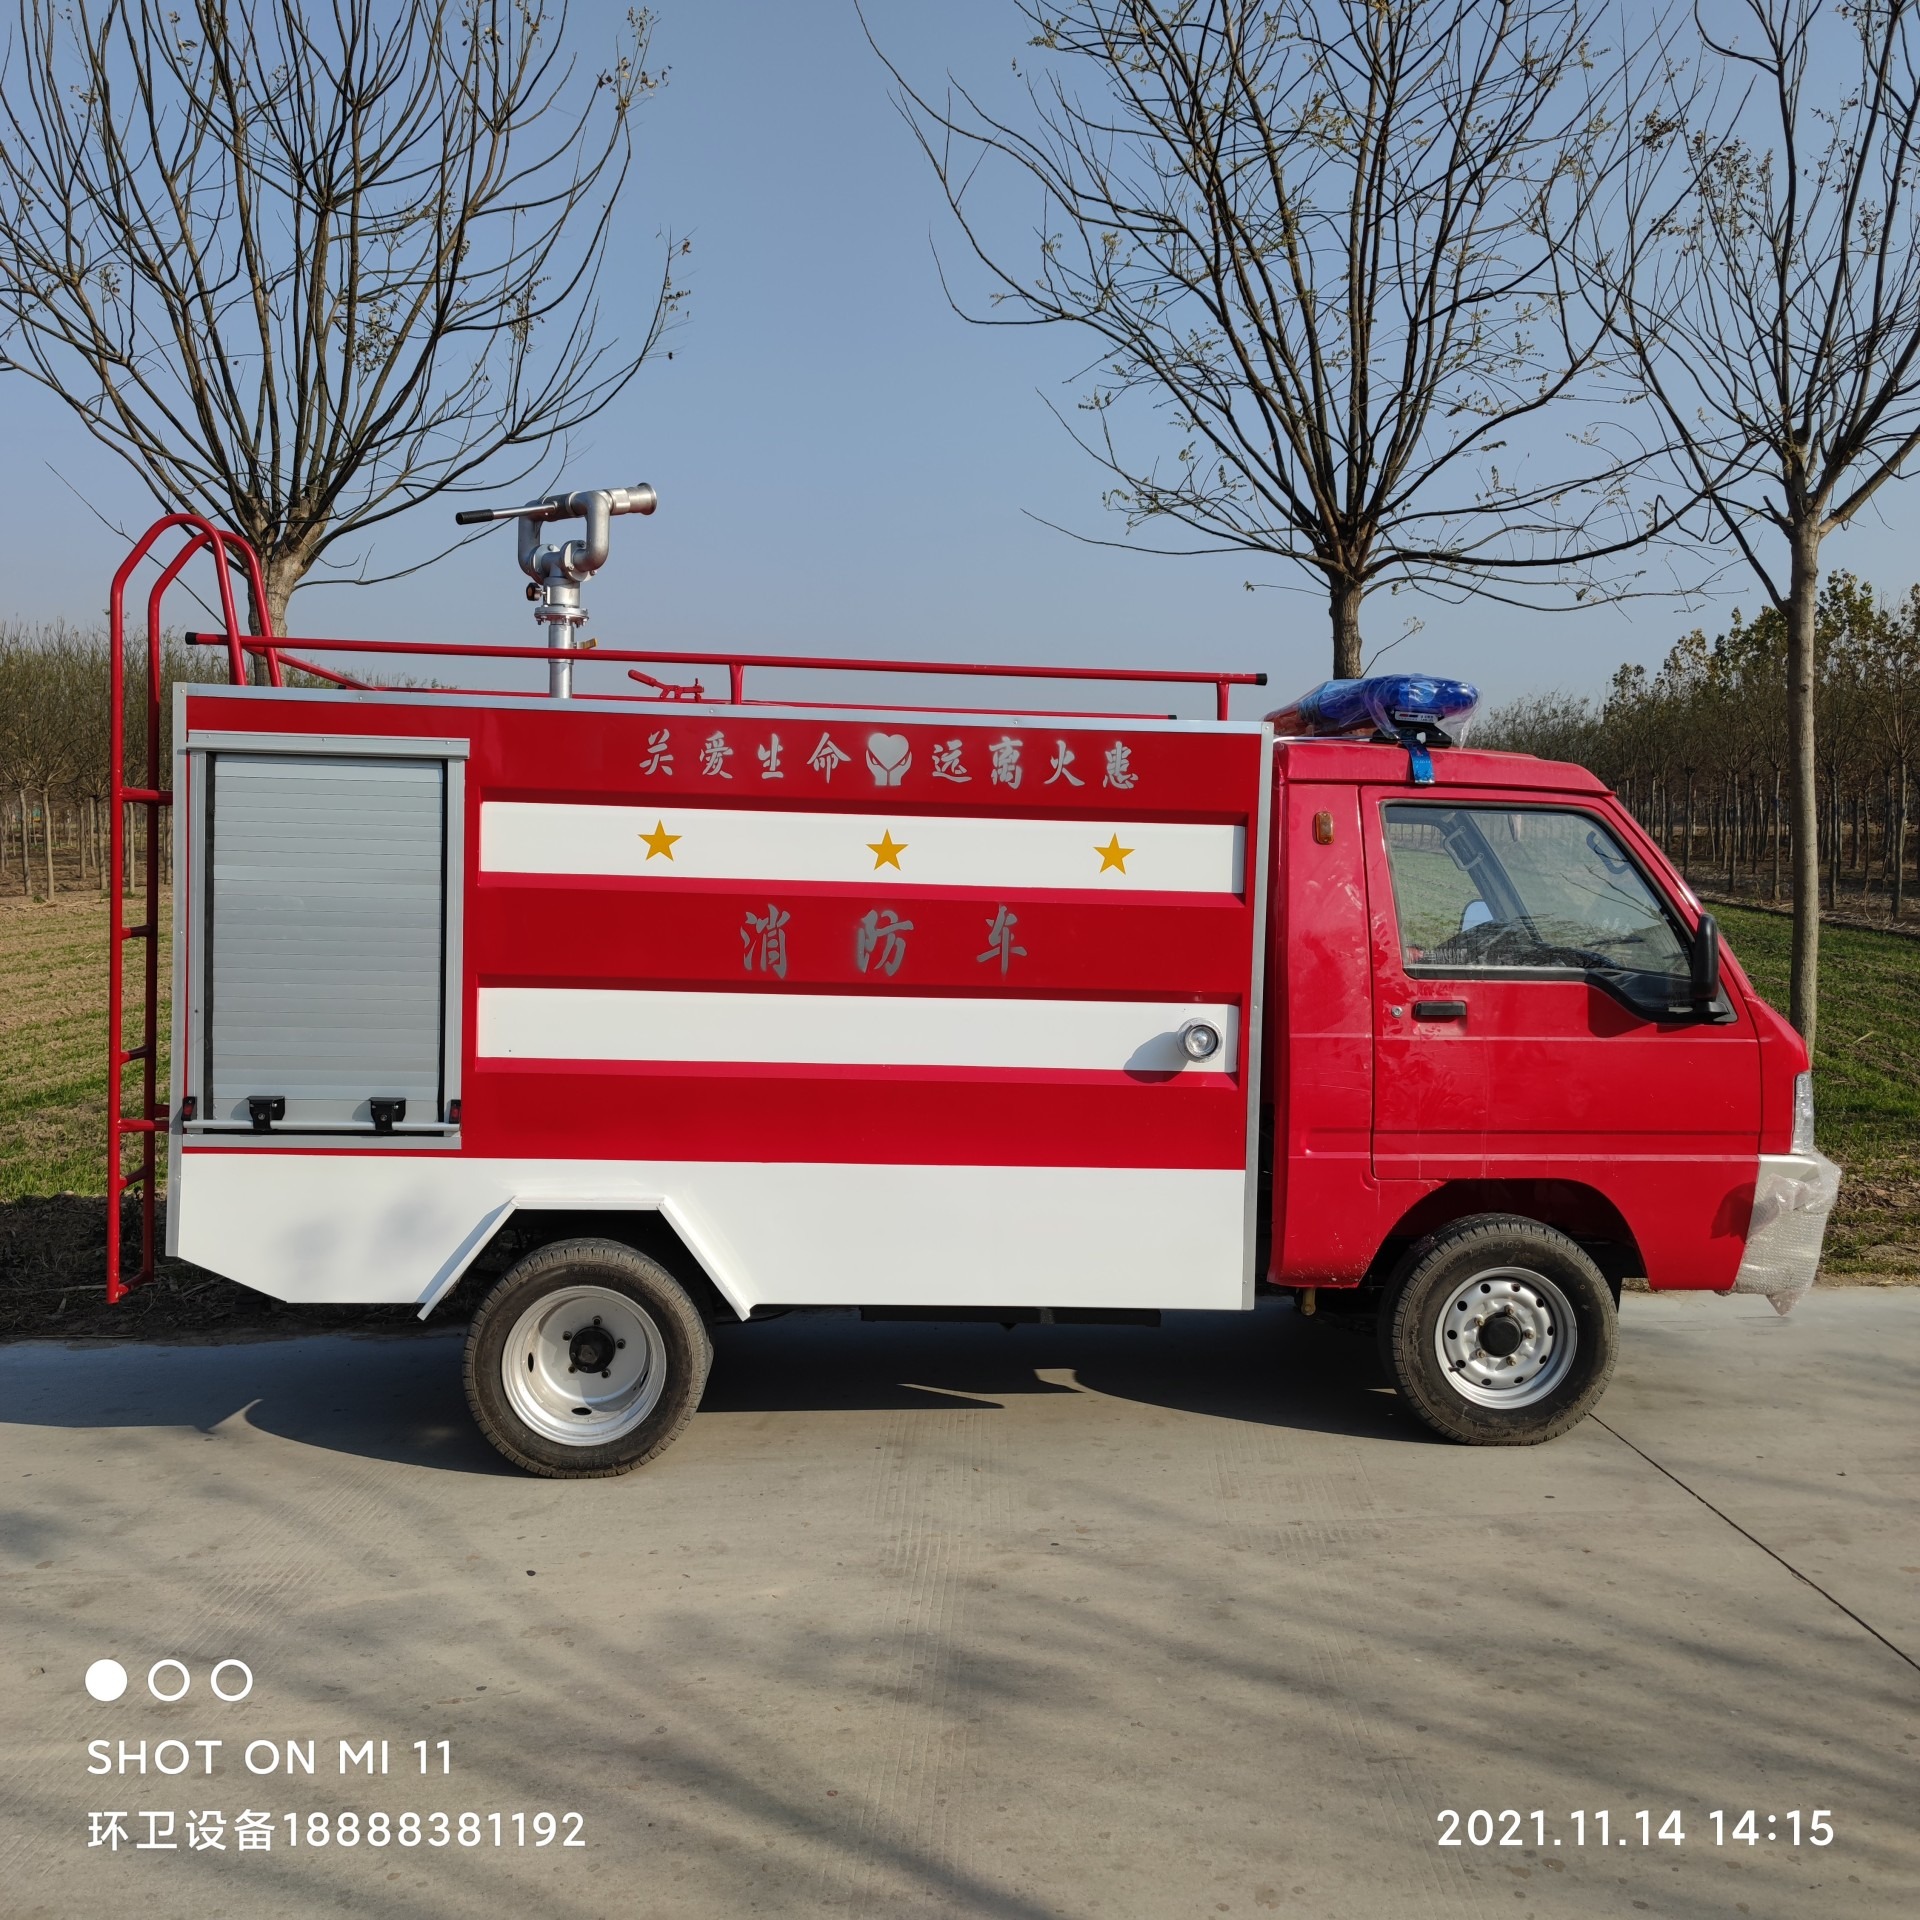 大型消防车 喷洒均匀 射程远范围广 转动灵活 稳定性强减震性好 荣跃